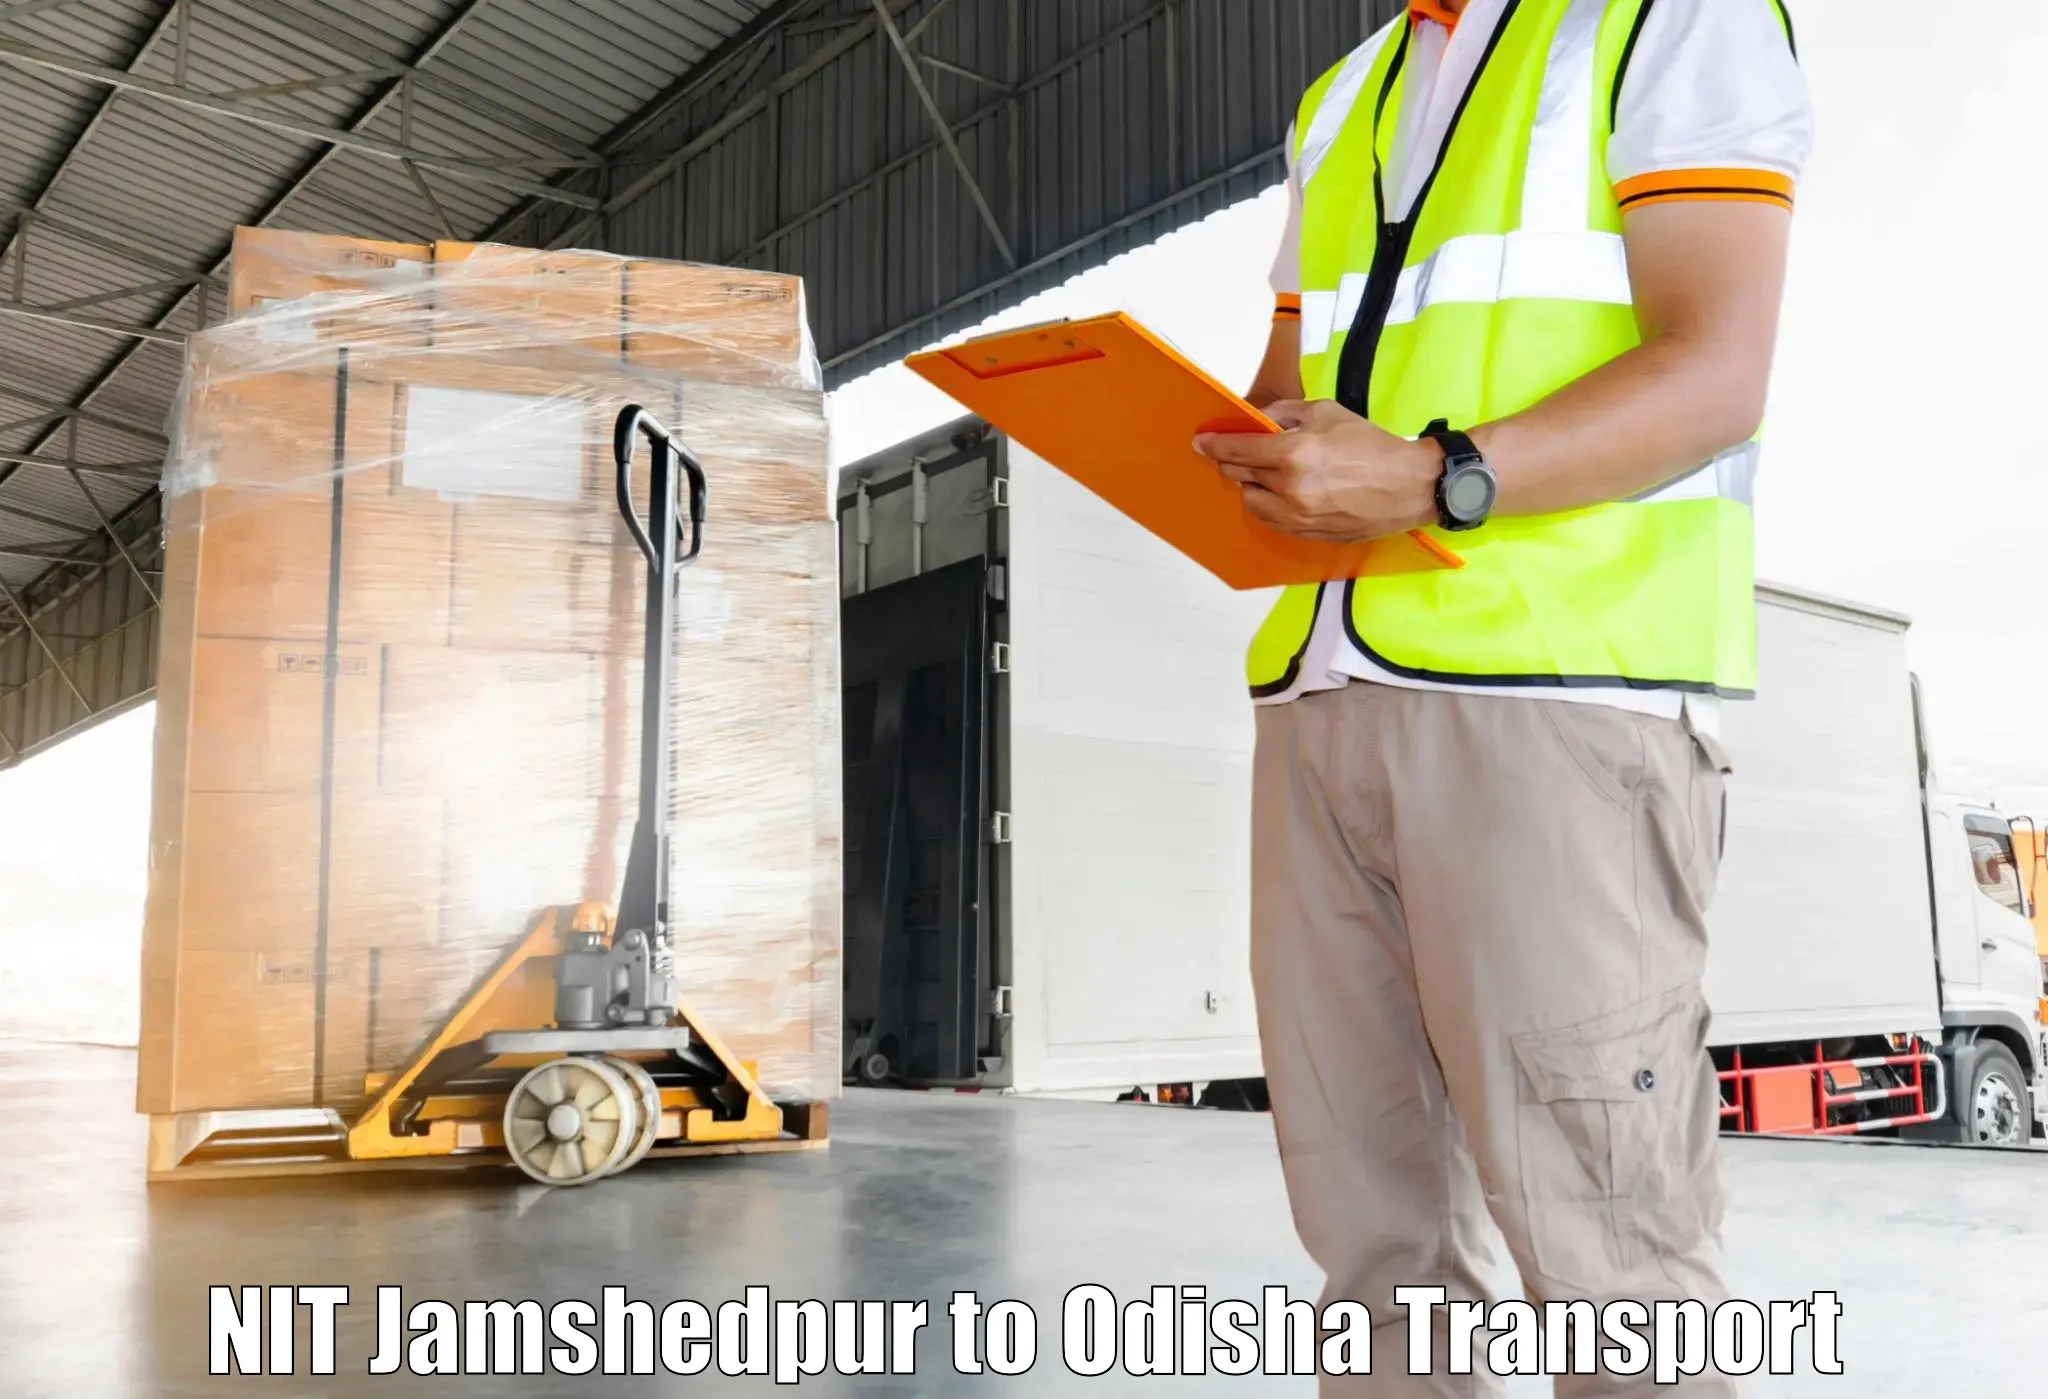 Express transport services NIT Jamshedpur to Kishorenagar